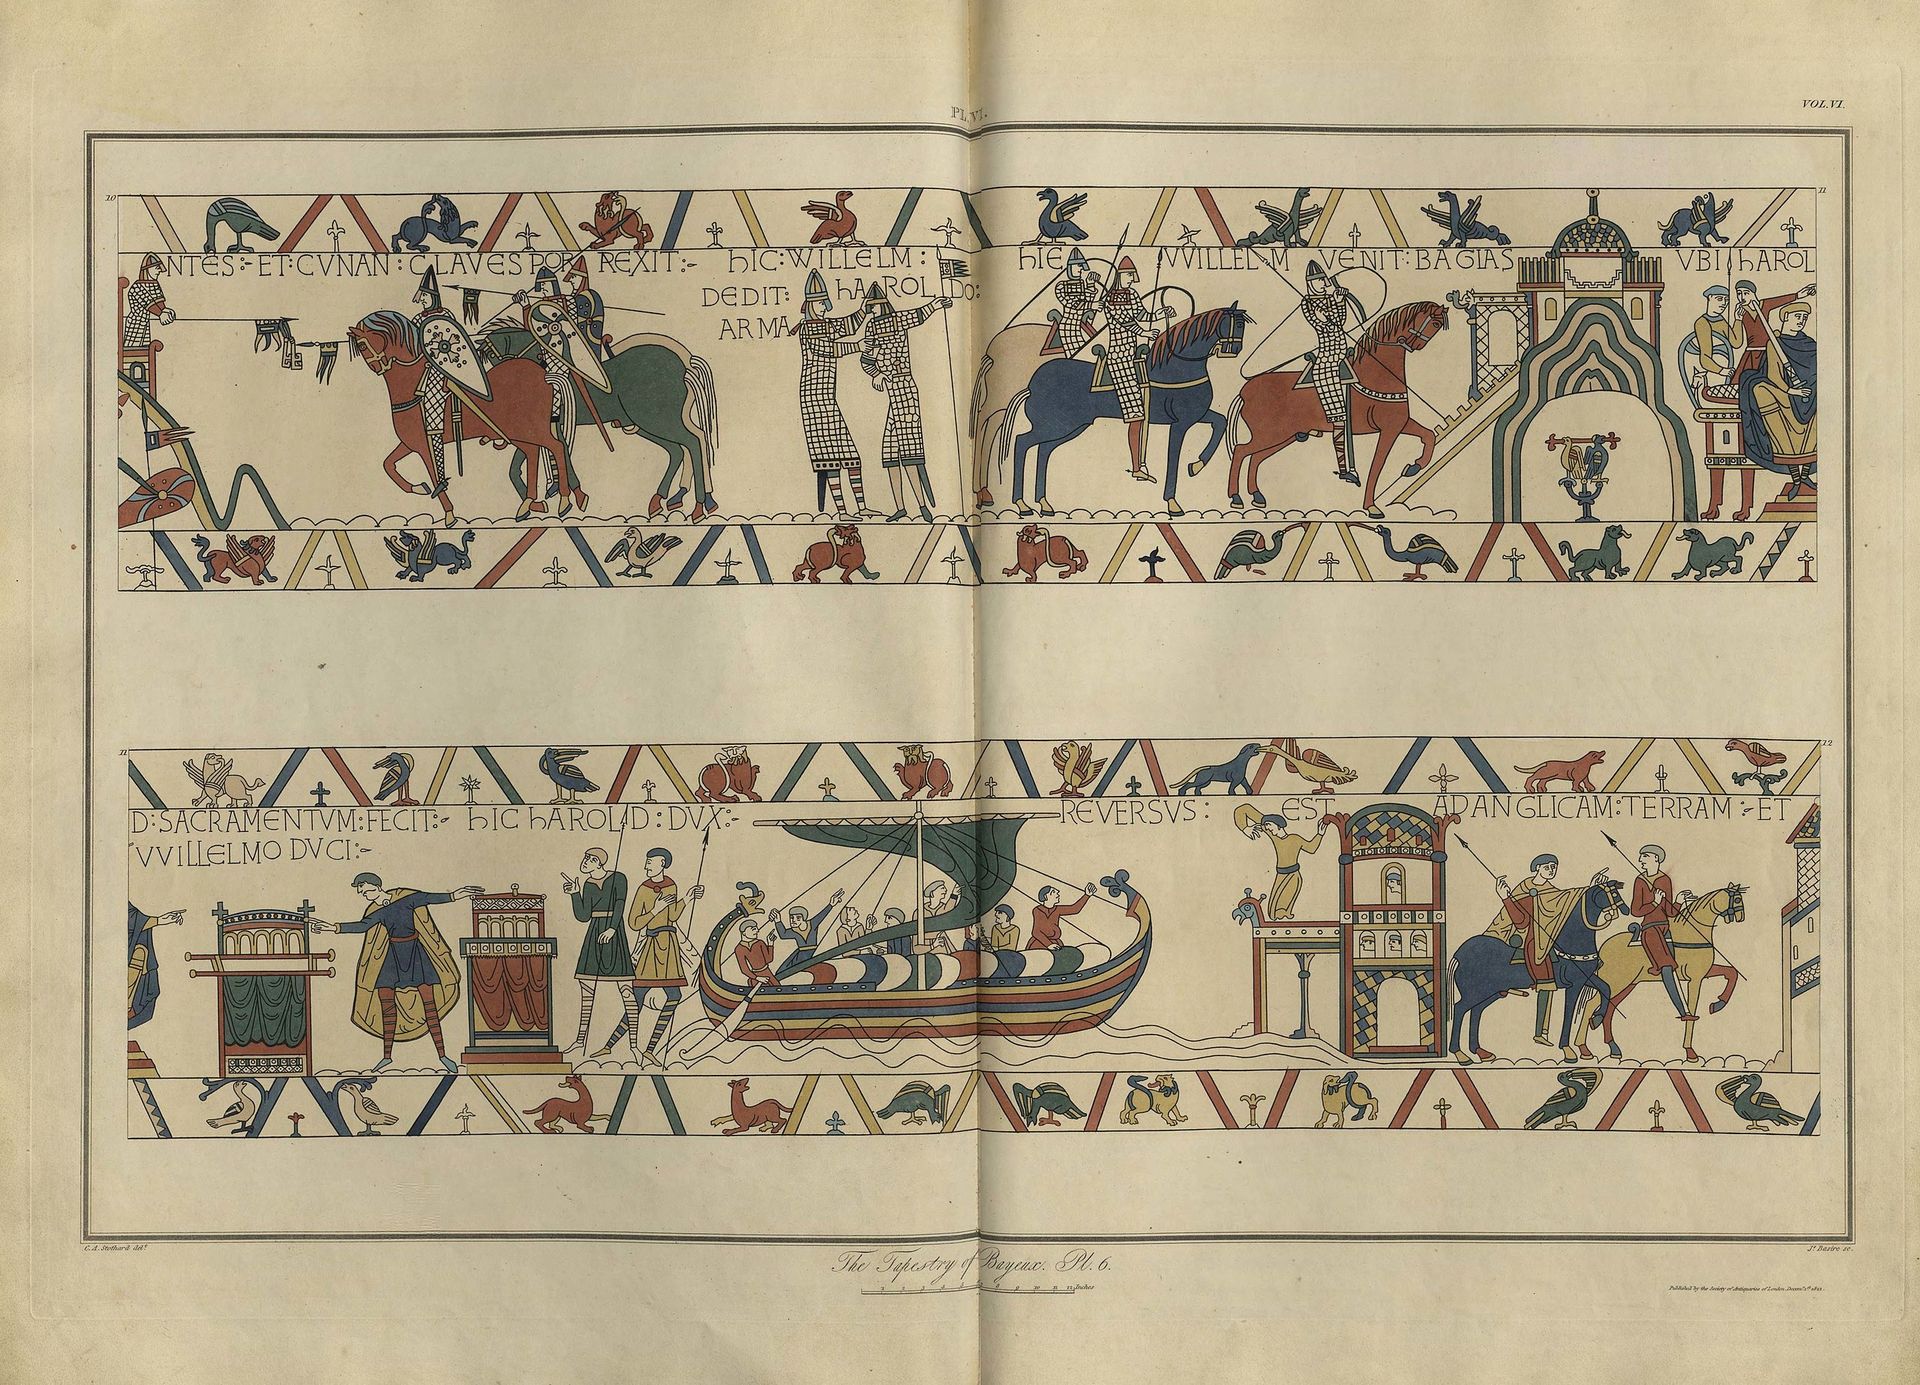 Deux des dessins de la Tapisserie de Bayeux, par Charles Stothard, publiés dans Vetusta Monumenta